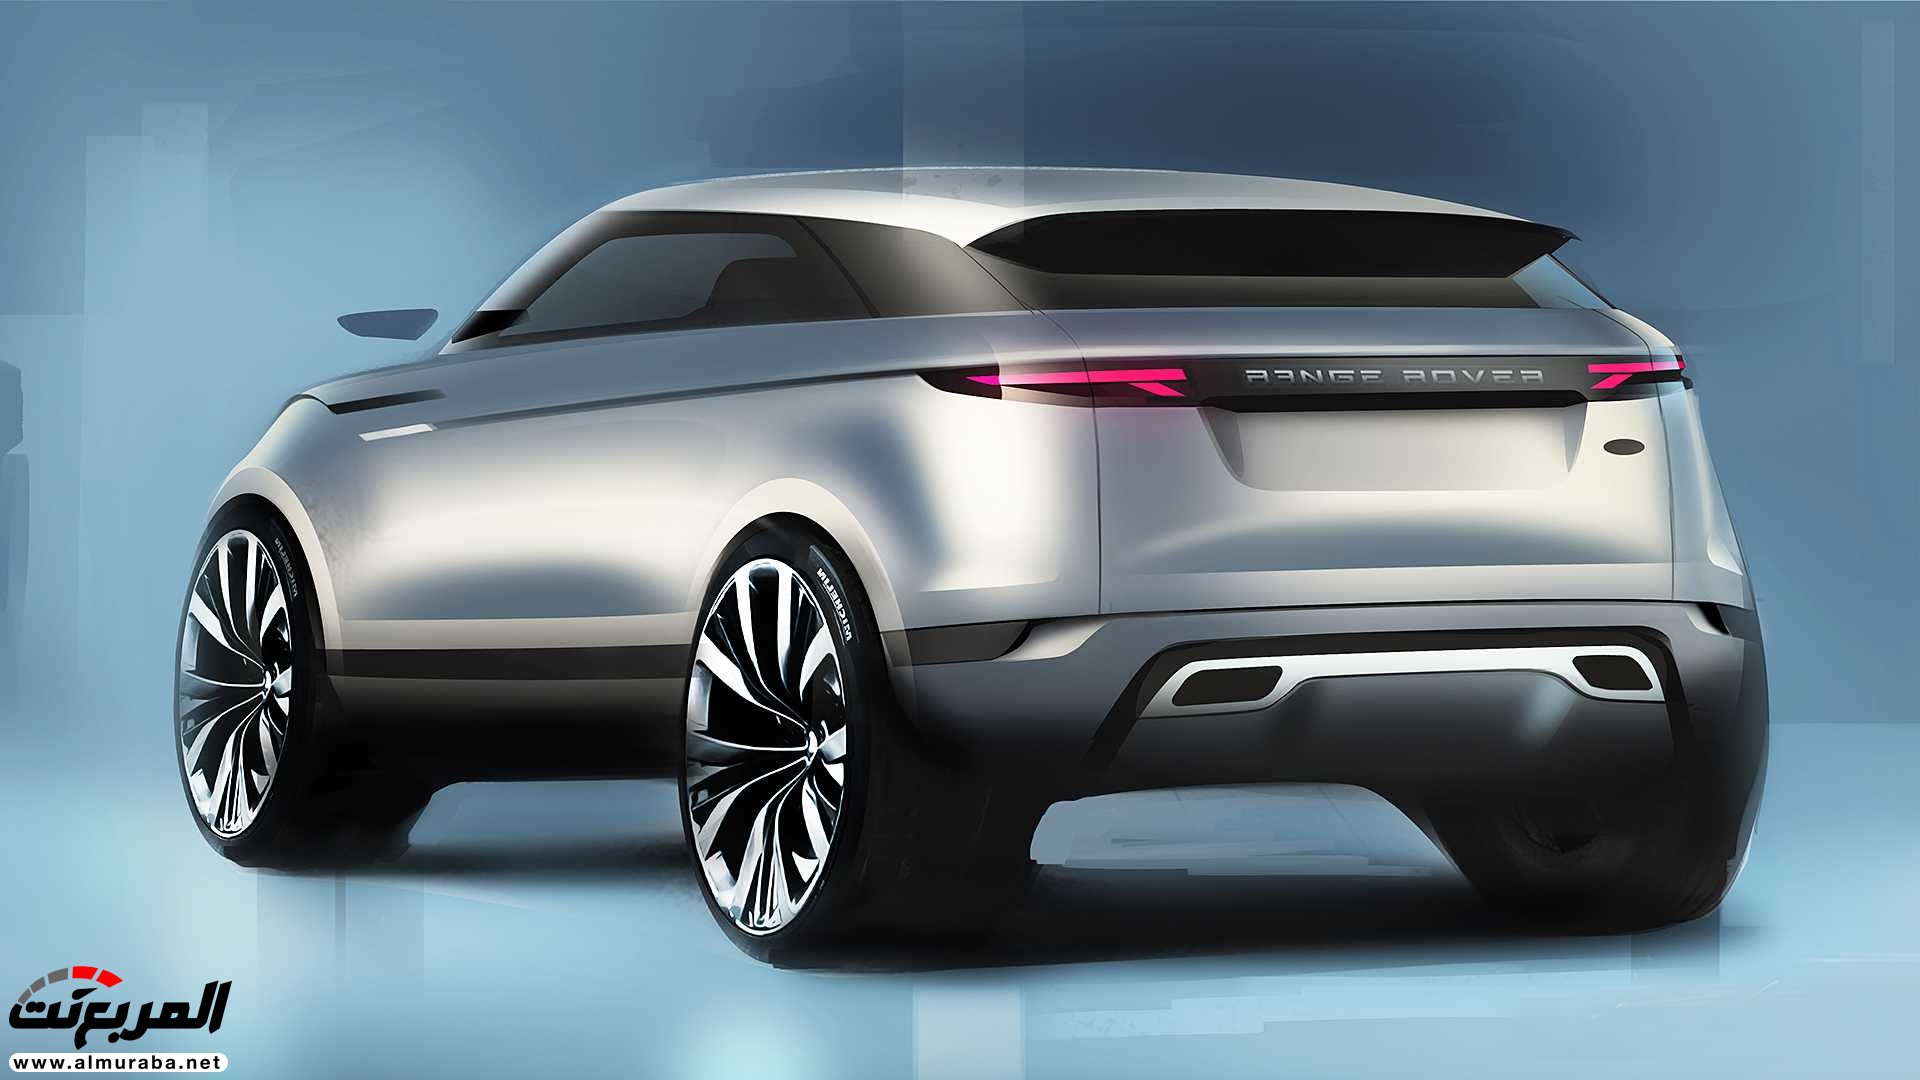 اهم 7 معلومات عن رنج روفر ايفوك 2020 الجديدة كلياً Range Rover Evoque 355